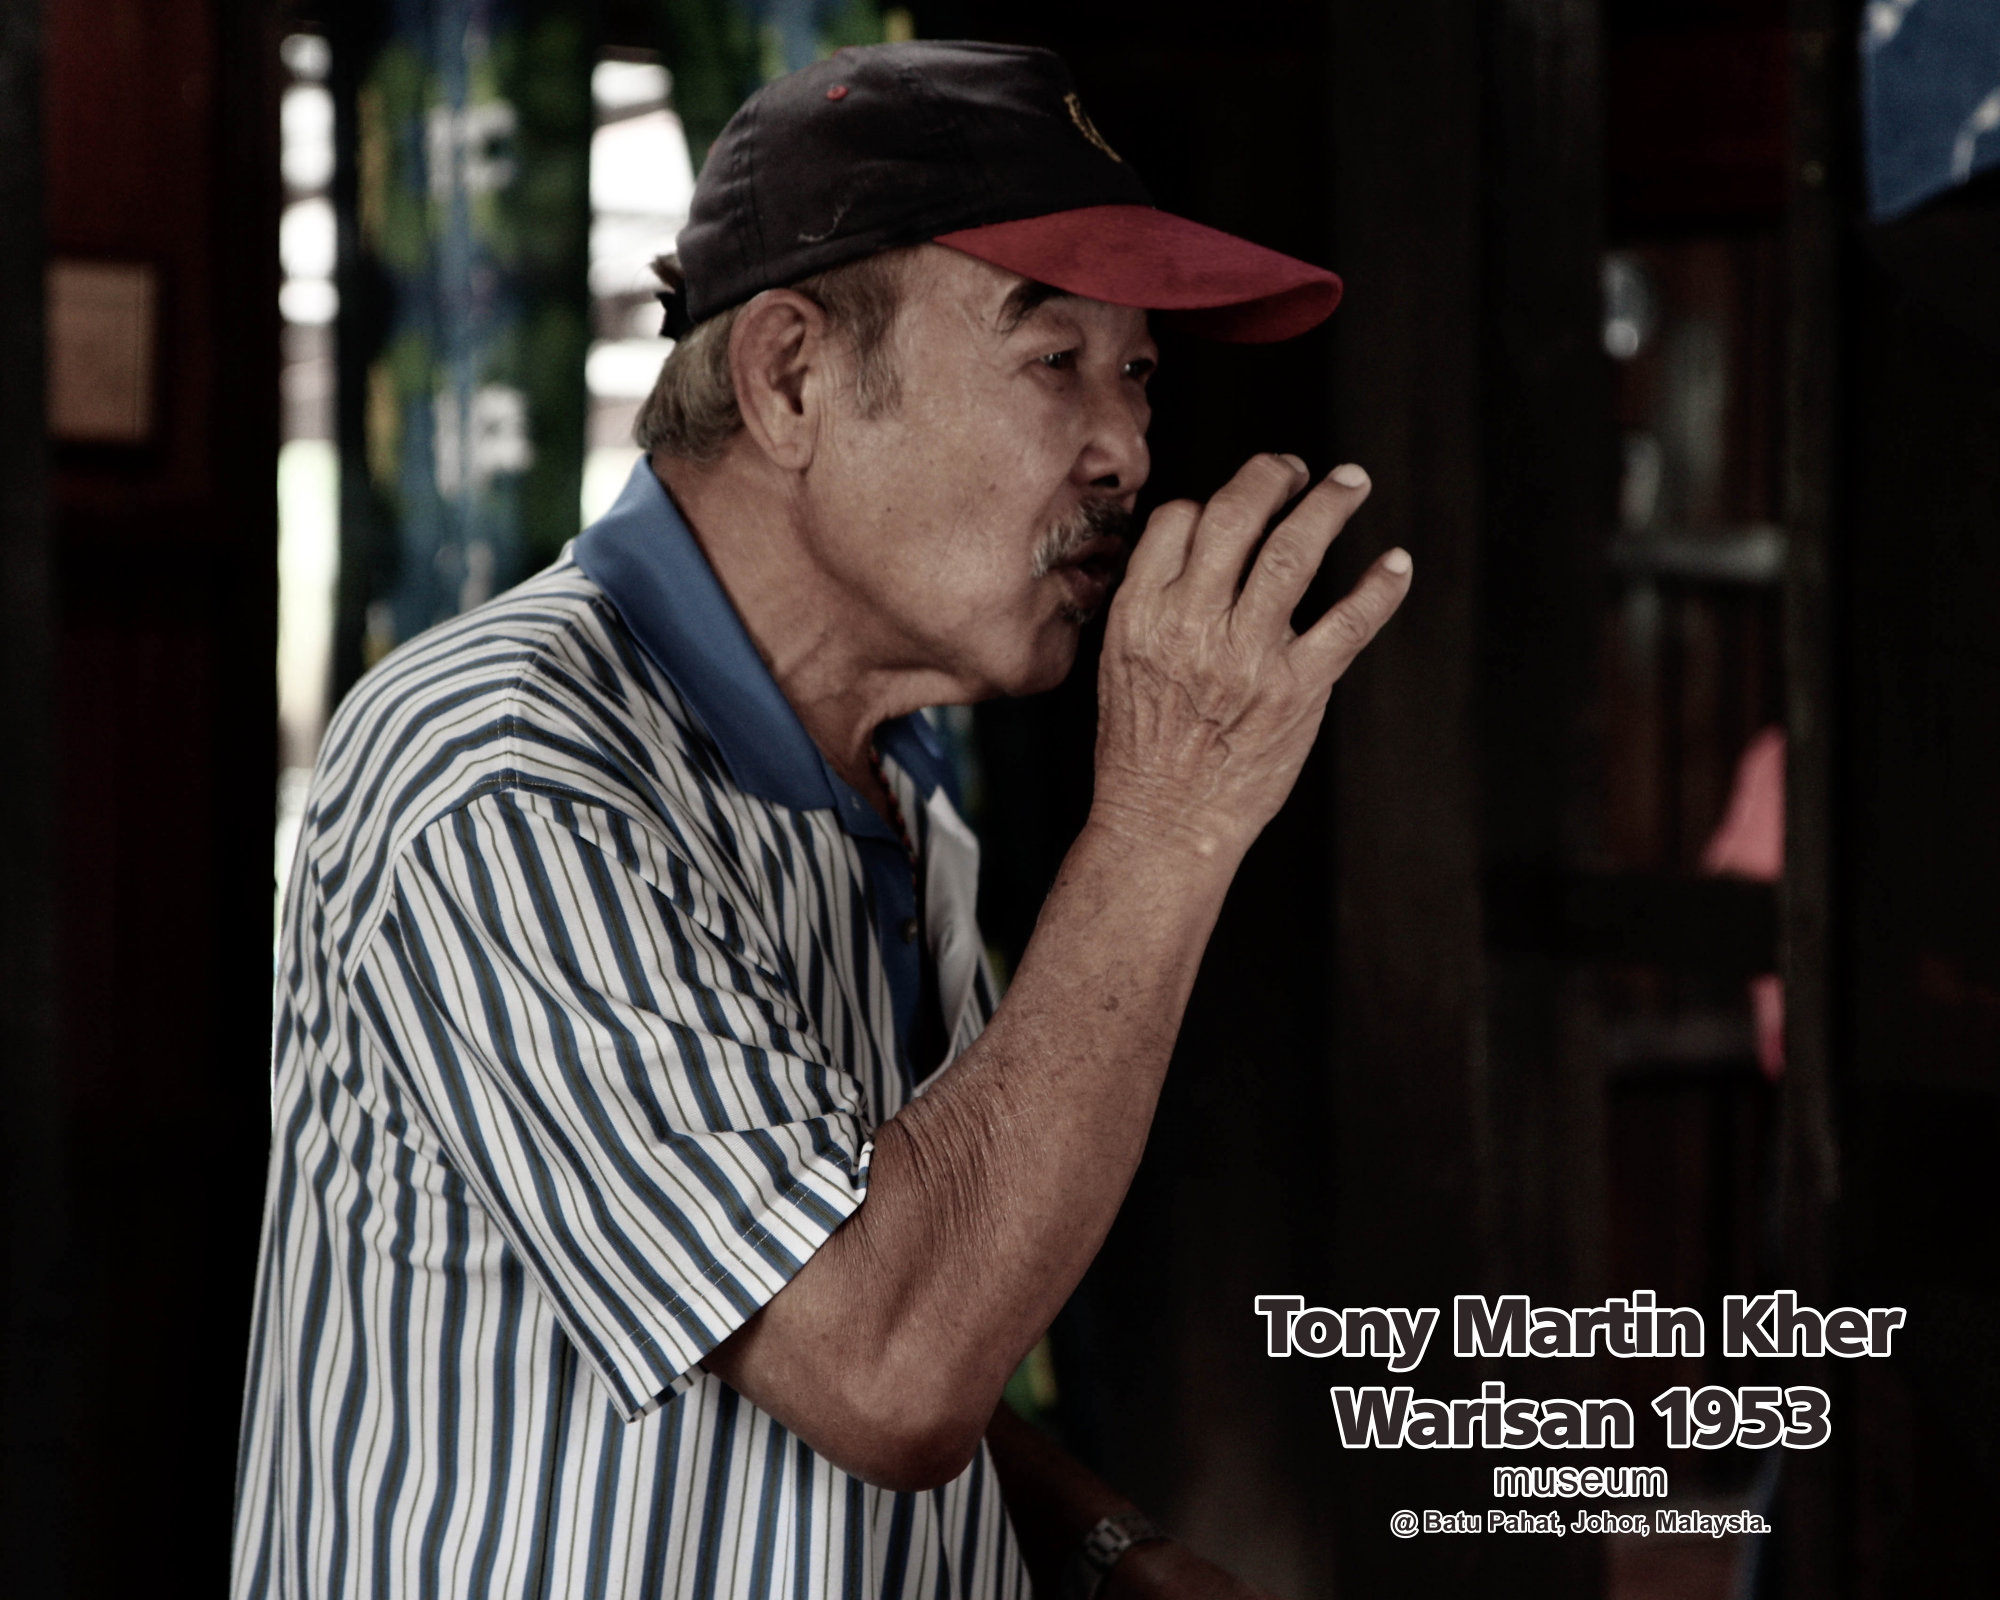 Tony Martin Kher founder of Warisan 1953 Museum at Batu Pahat Johor Malaysia Heritage 1953 Artist Joey Kher A29